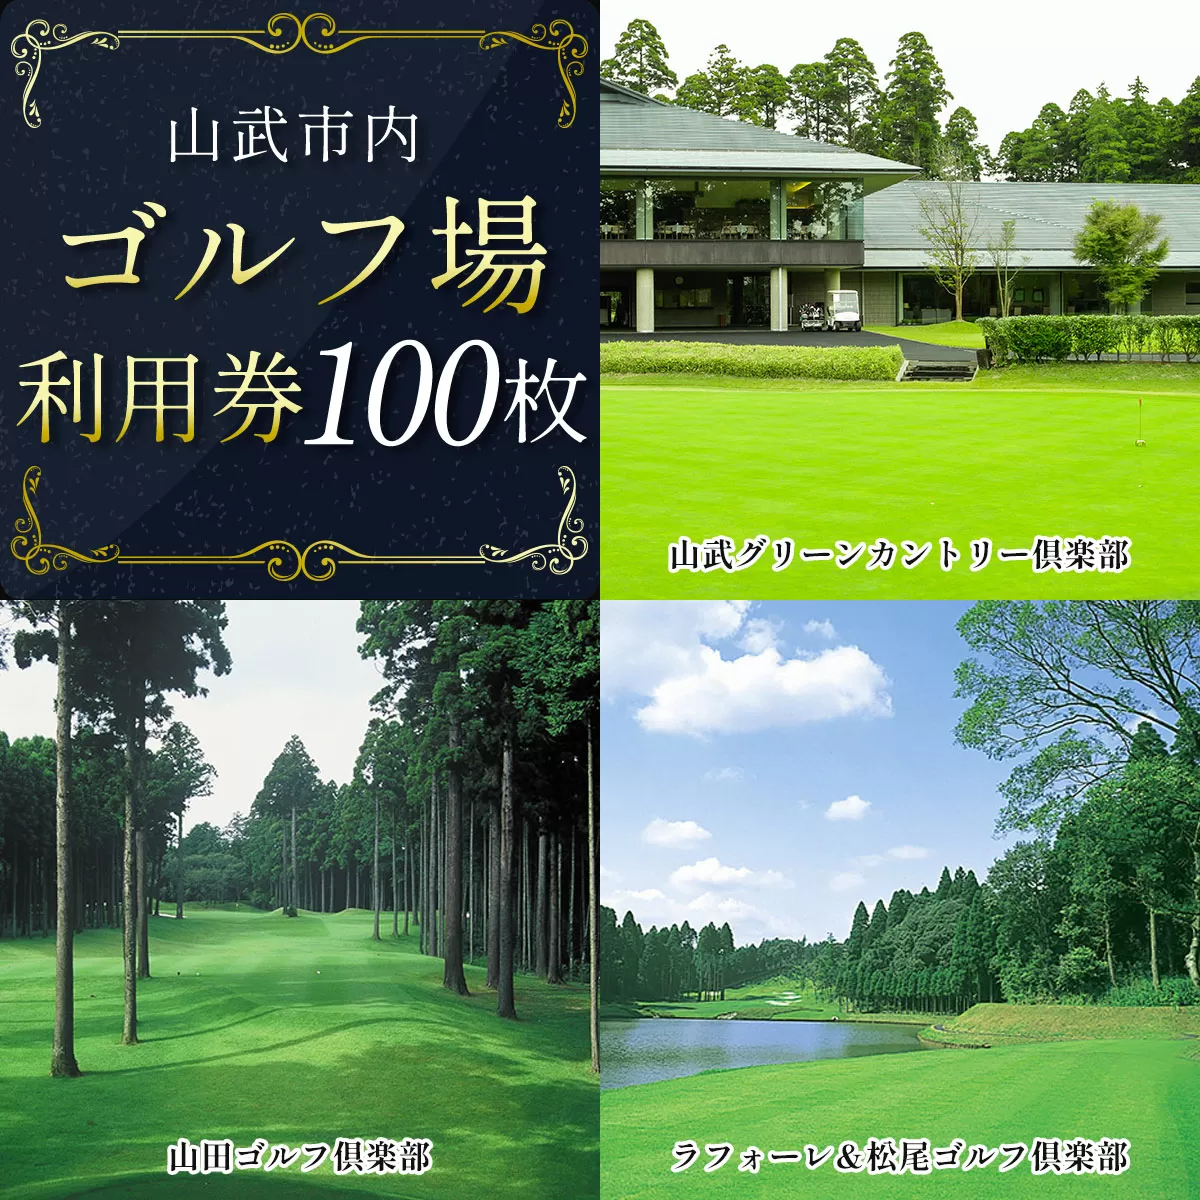 【山武市内】ゴルフ場利用100枚 SMBJ015